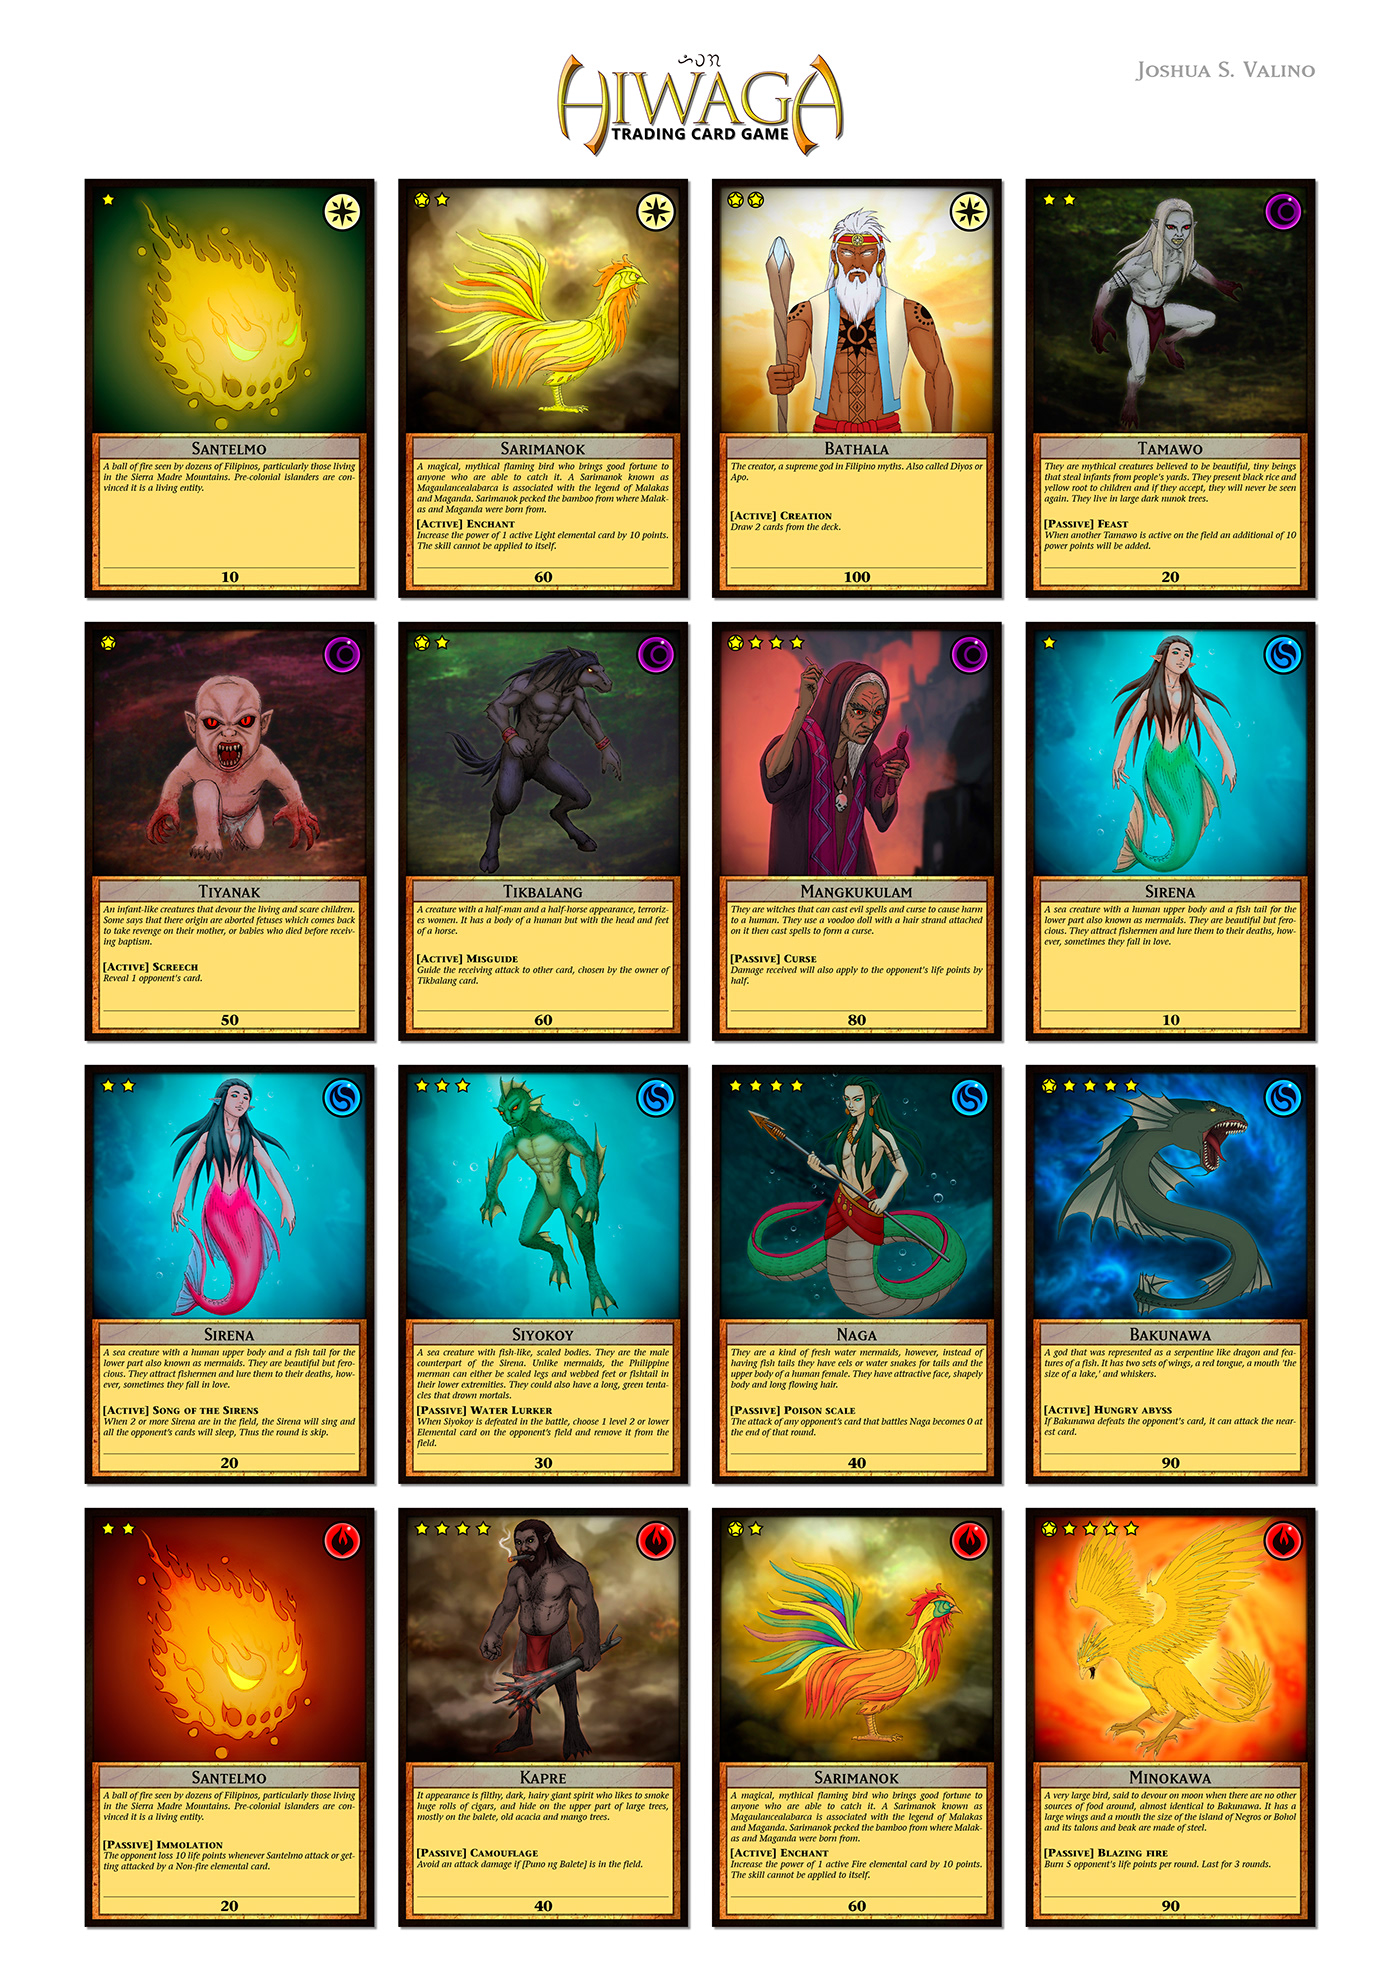 Philippine Mythology trading card game